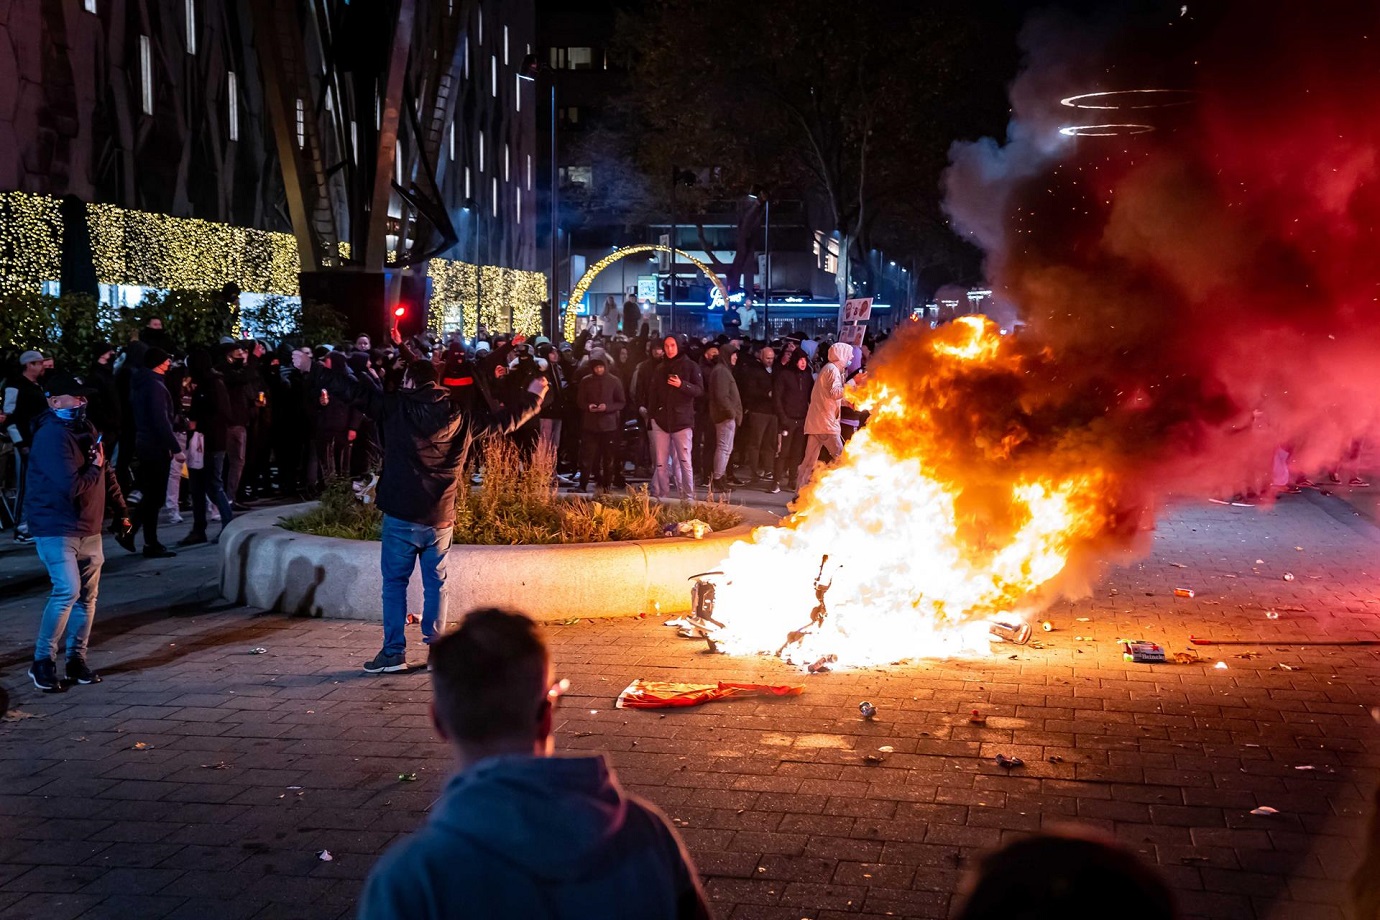 Restricciones por covid-19 desatan disturbios en Rotterdam